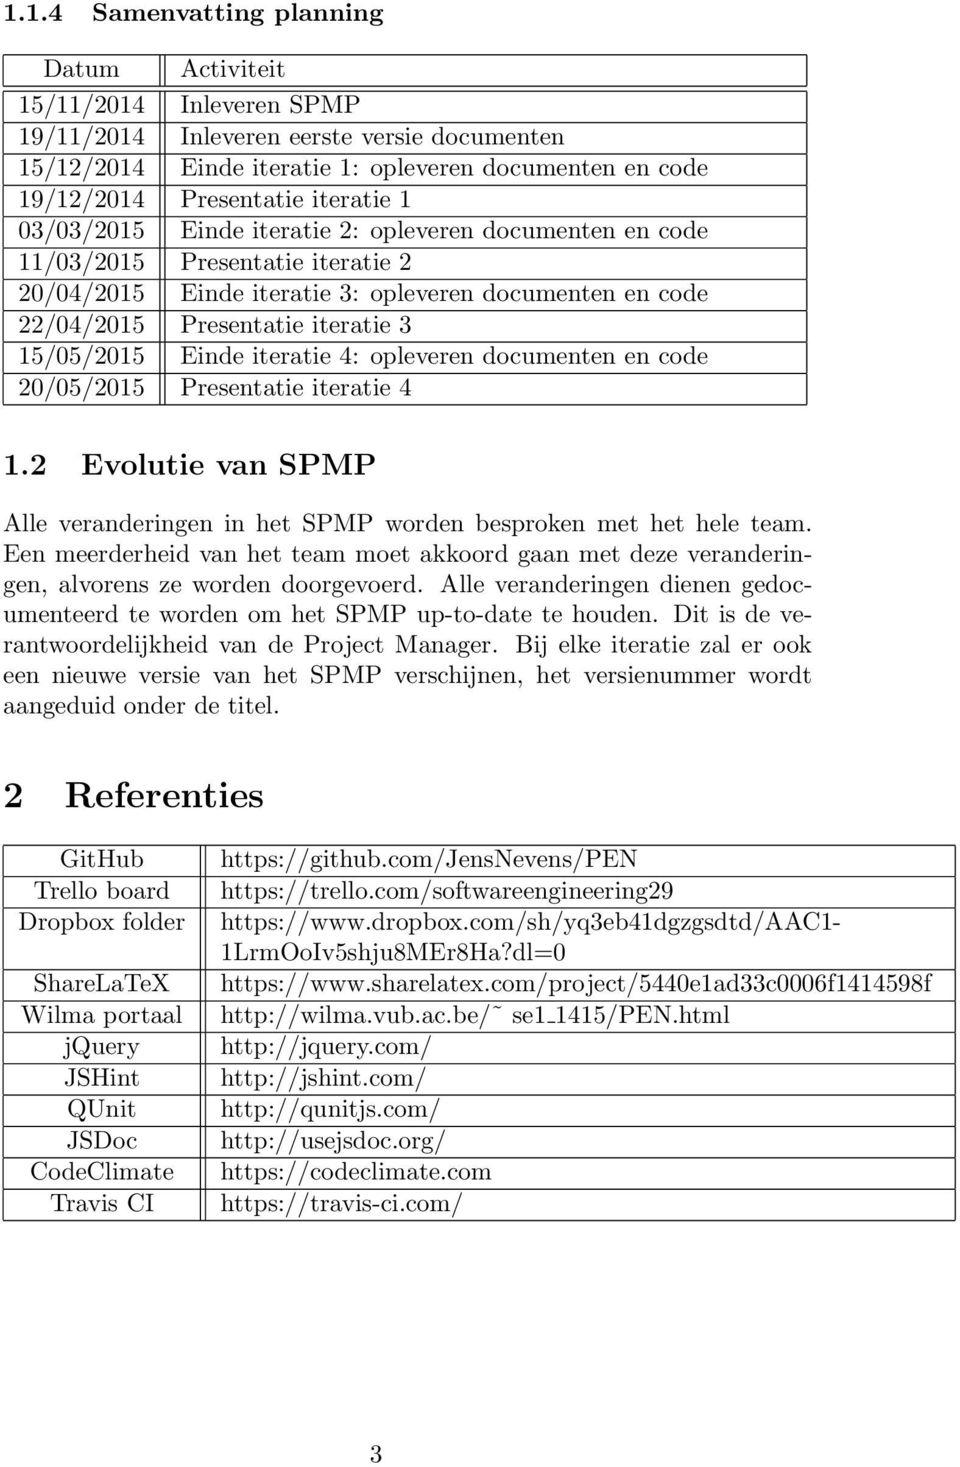 15/05/2015 Einde iteratie 4: opleveren documenten en code 20/05/2015 Presentatie iteratie 4 1.2 Evolutie van SPMP Alle veranderingen in het SPMP worden besproken met het hele team.